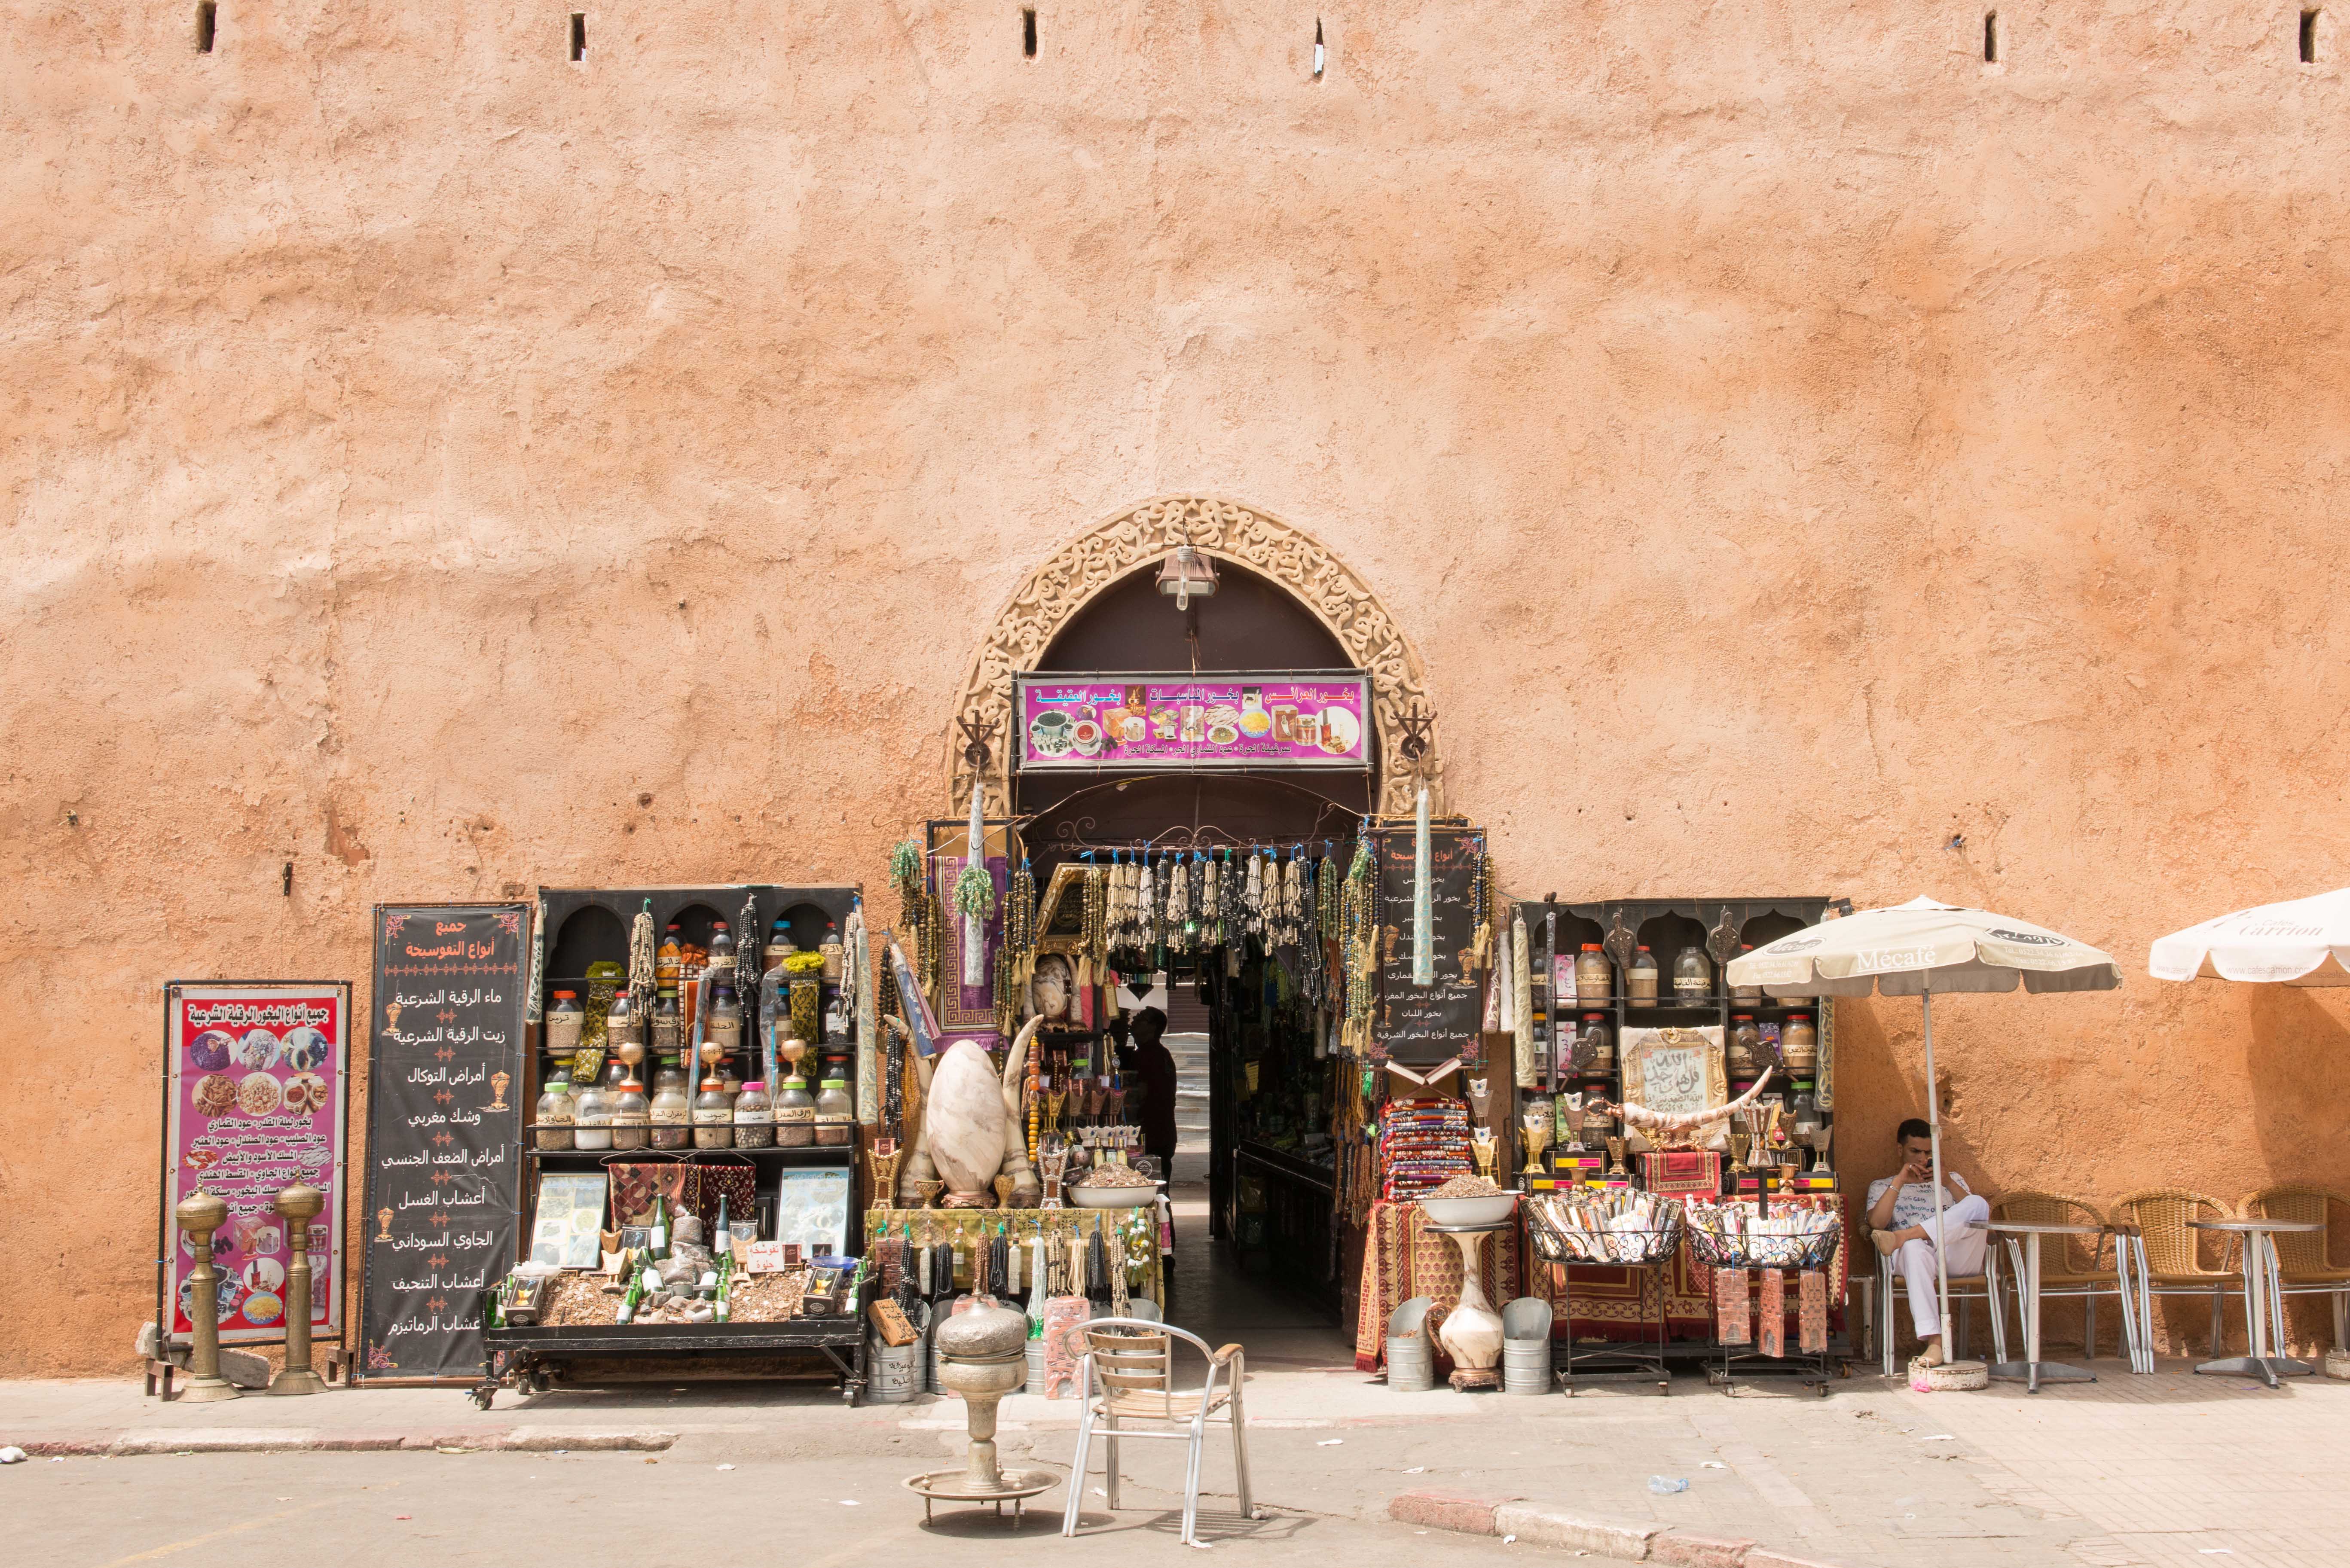 Rabat, Morocco: A Brief Selective Tour. Part II The Medina